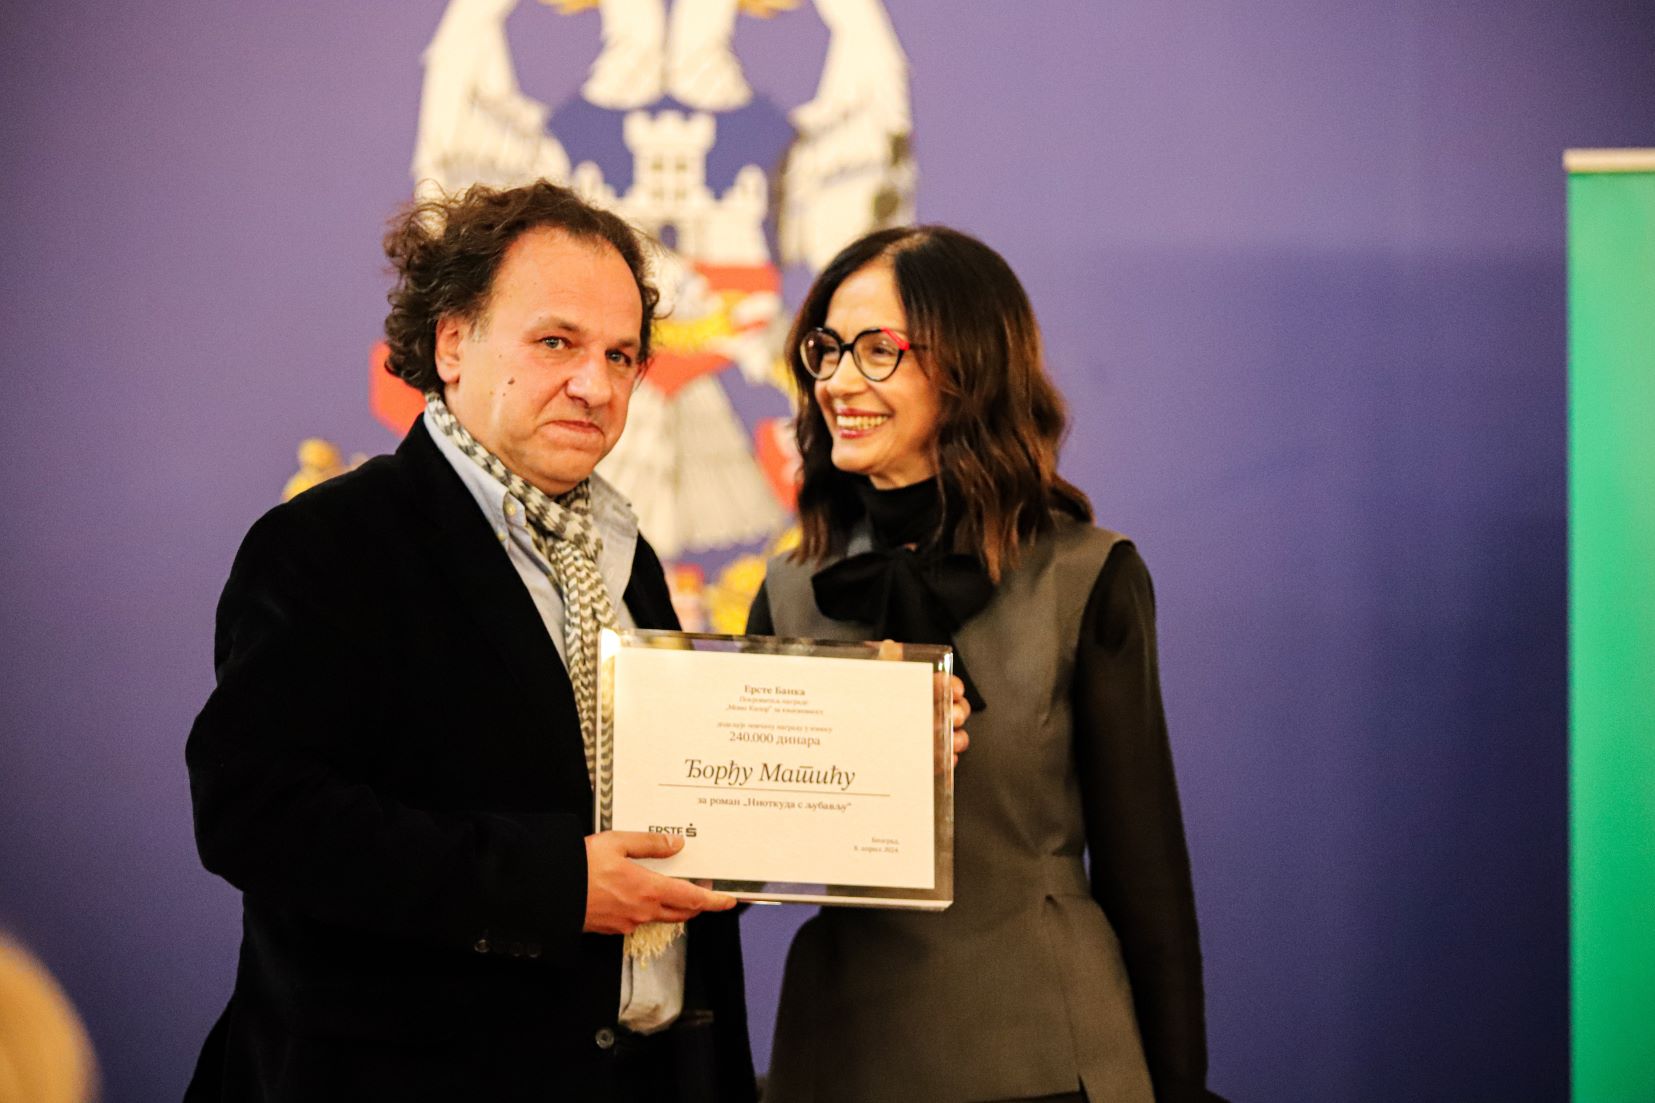 Sponzor nagrade "Momo Kapor" je Erste banka: Đorđe Matić i Aleksandra Kosanović Strižak na uručenju nagrade (Foto: Marijana Vasiljević)